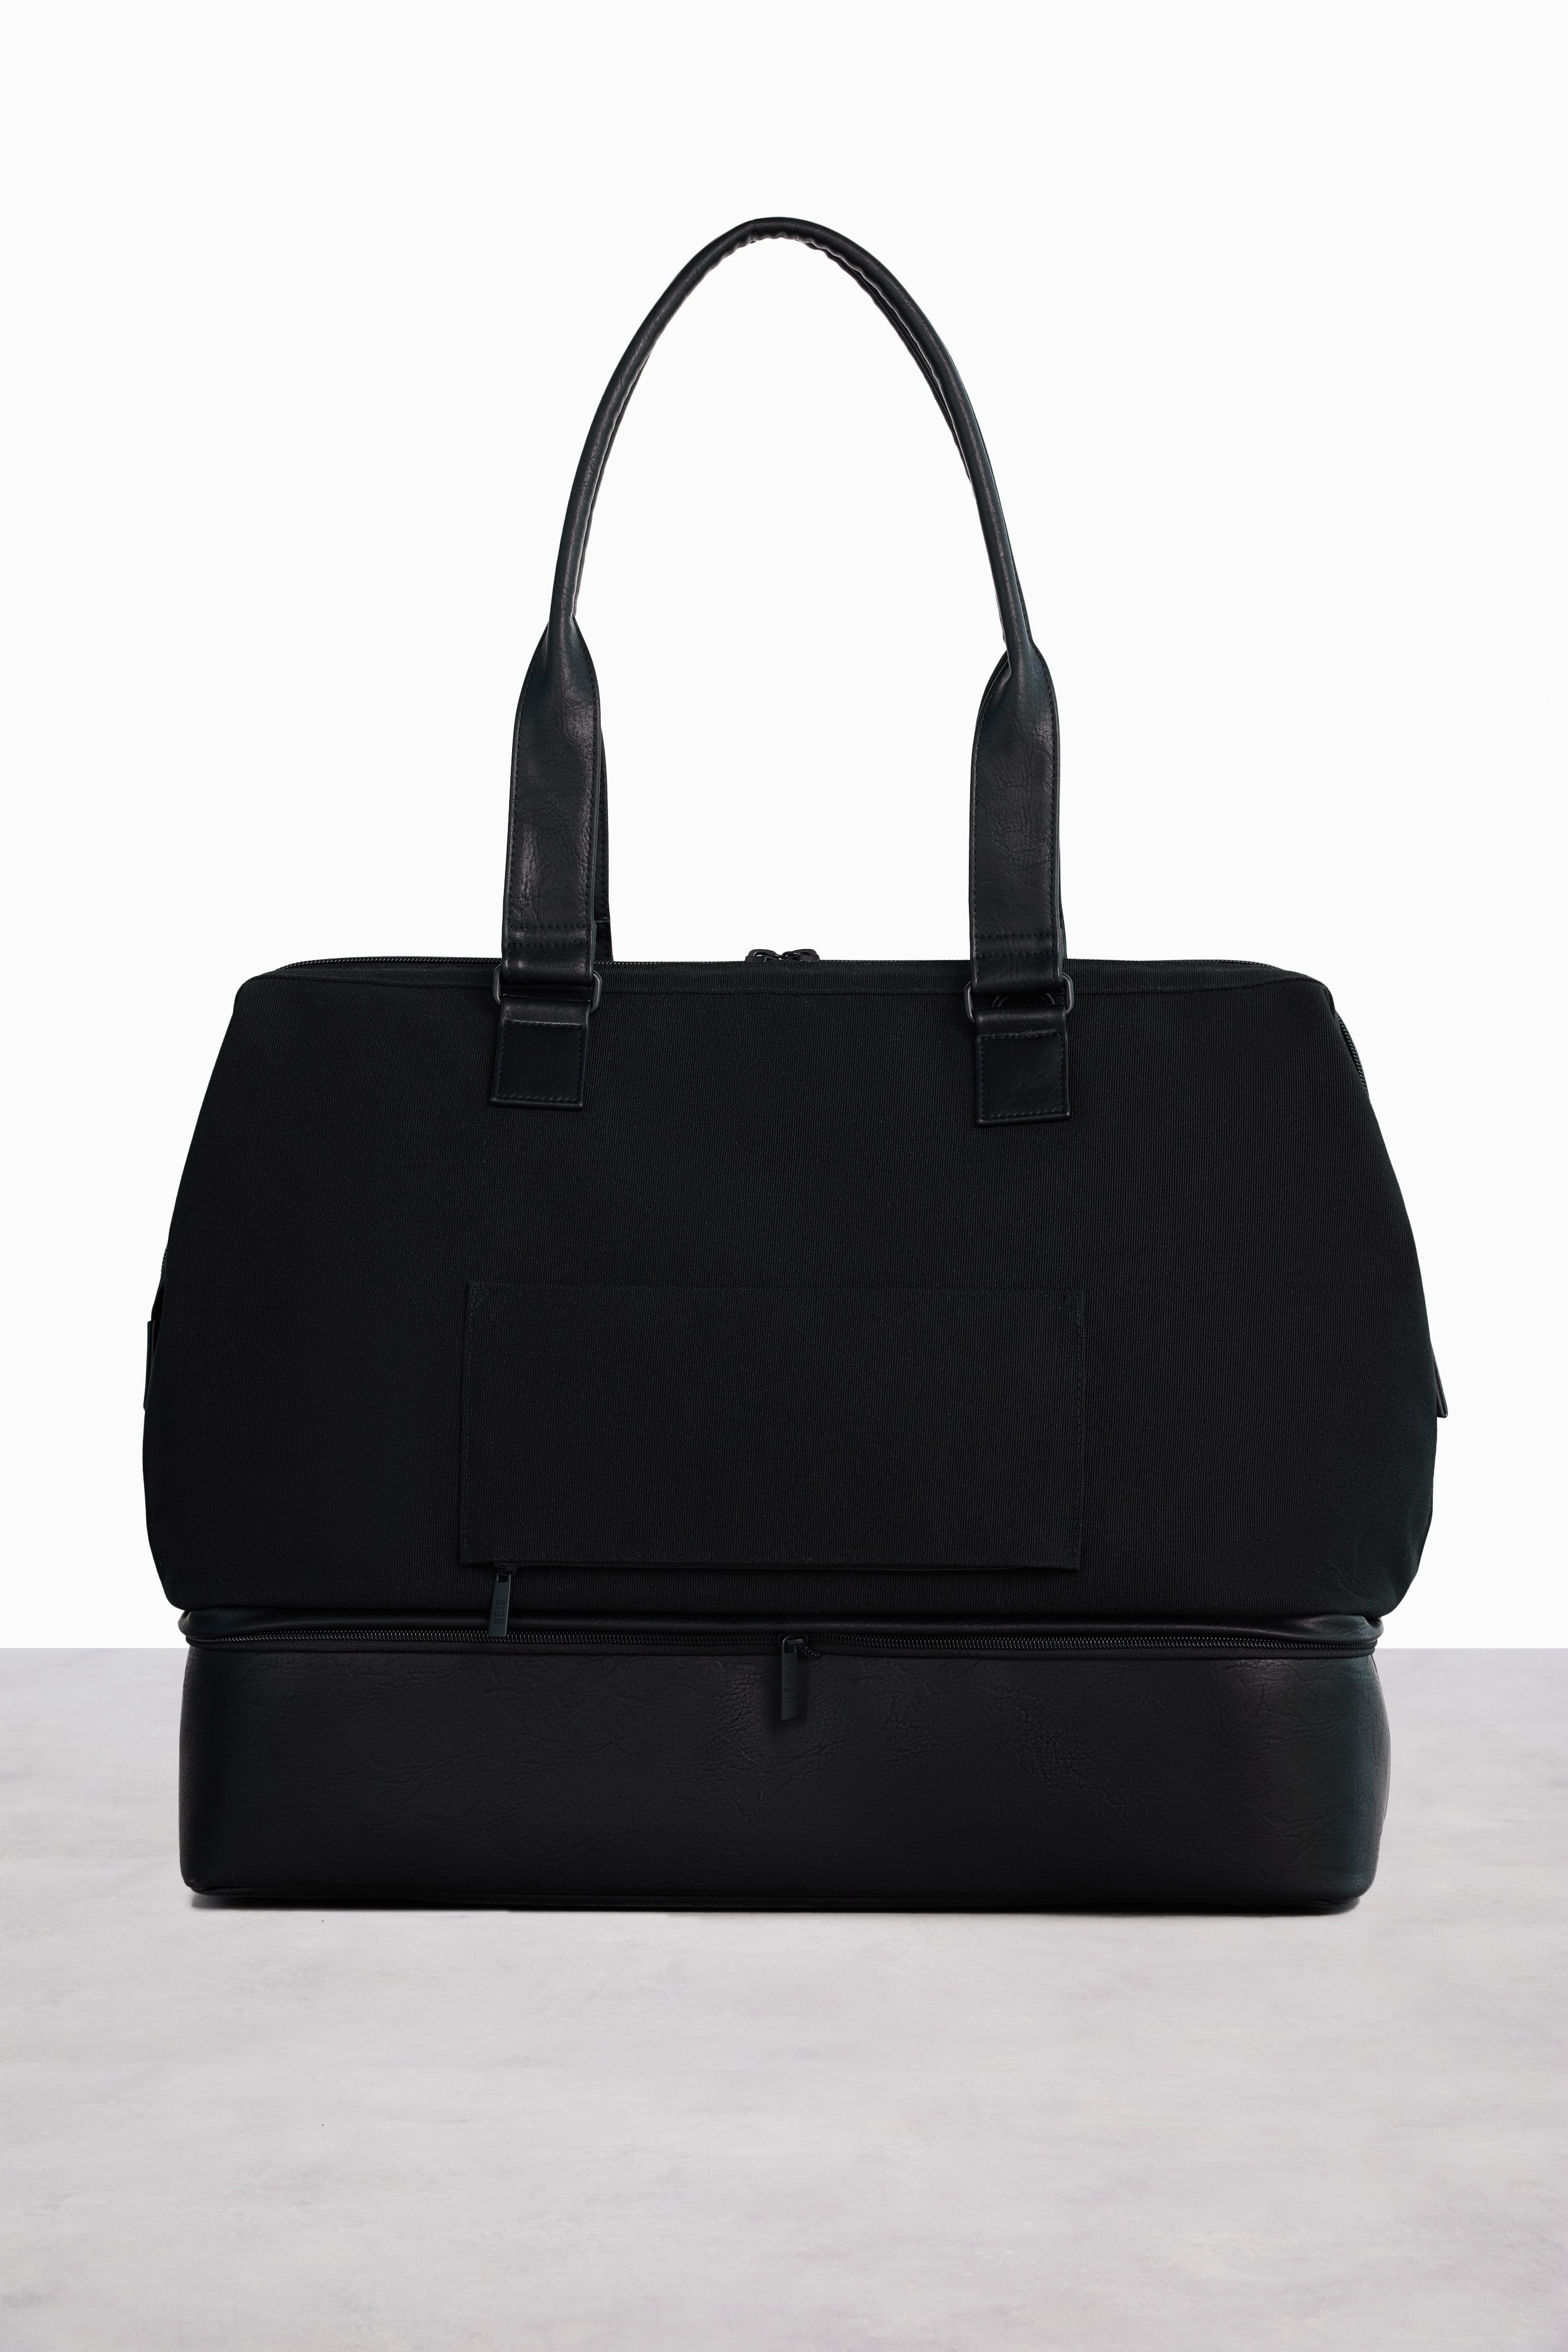 Béis 'The Weekender' in Black - Black Travel Bag & Overnight Bags